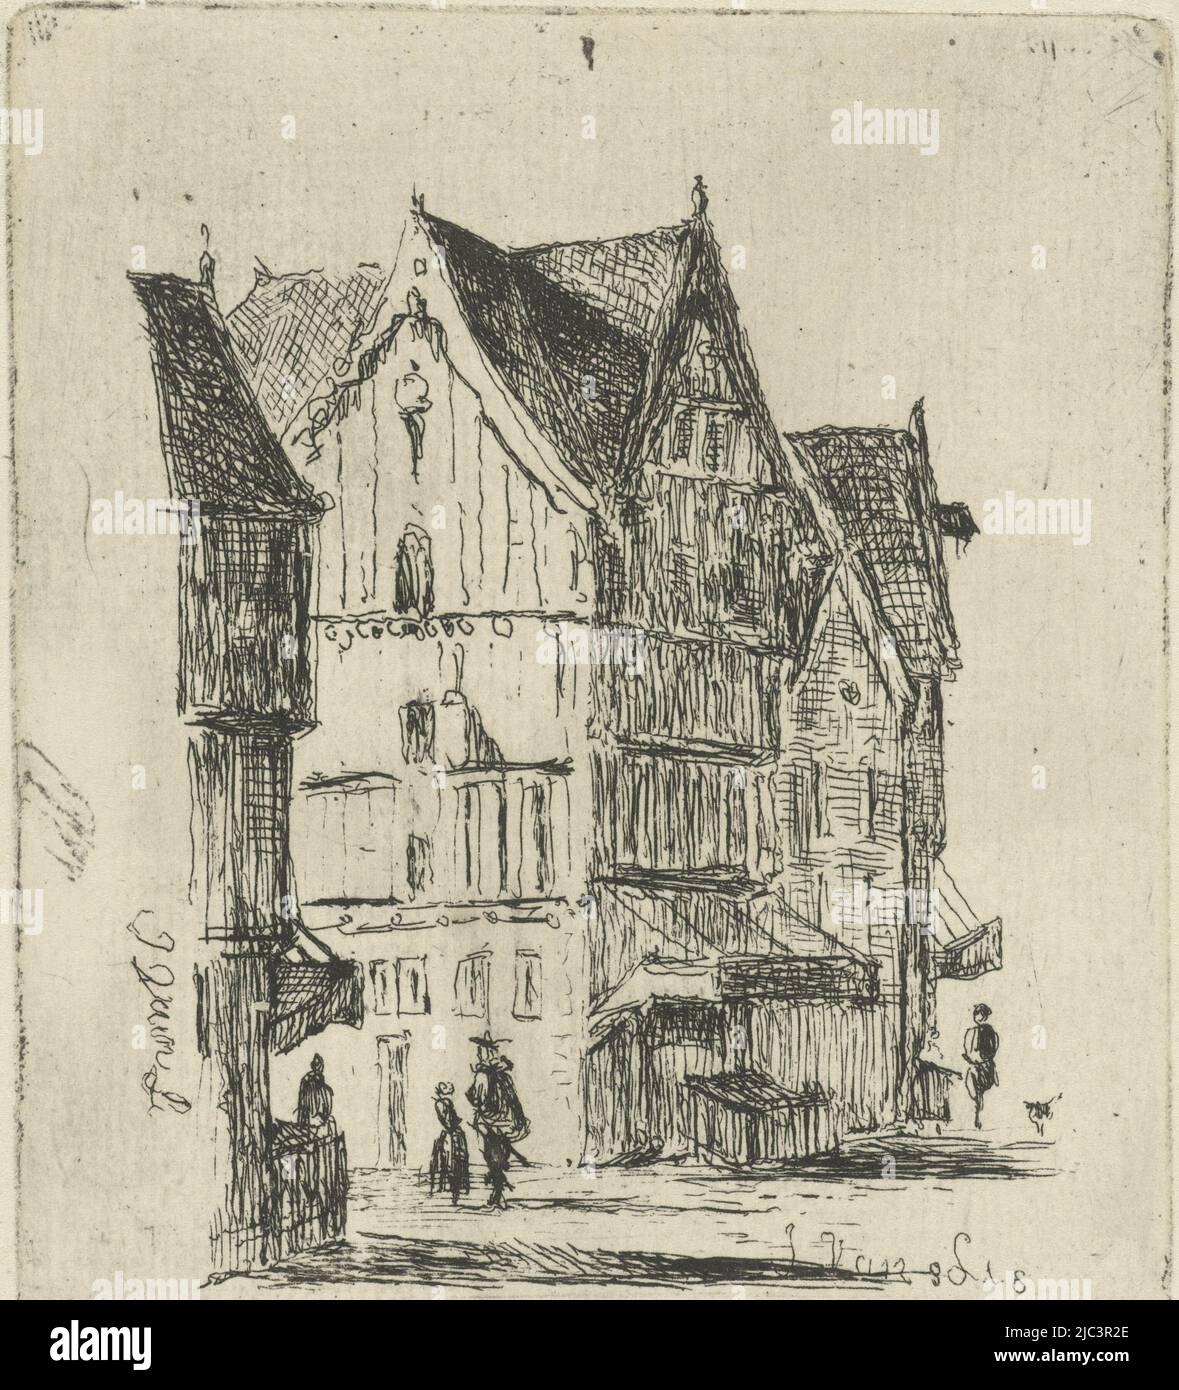 Vue sur la rue avec maisons en bois et quelques marcheurs, vue sur la rue, imprimerie: Joannes van Liefland, (mentionné sur l'objet), 1819 - 1861, papier, gravure, h 92 mm × l 78 mm Banque D'Images